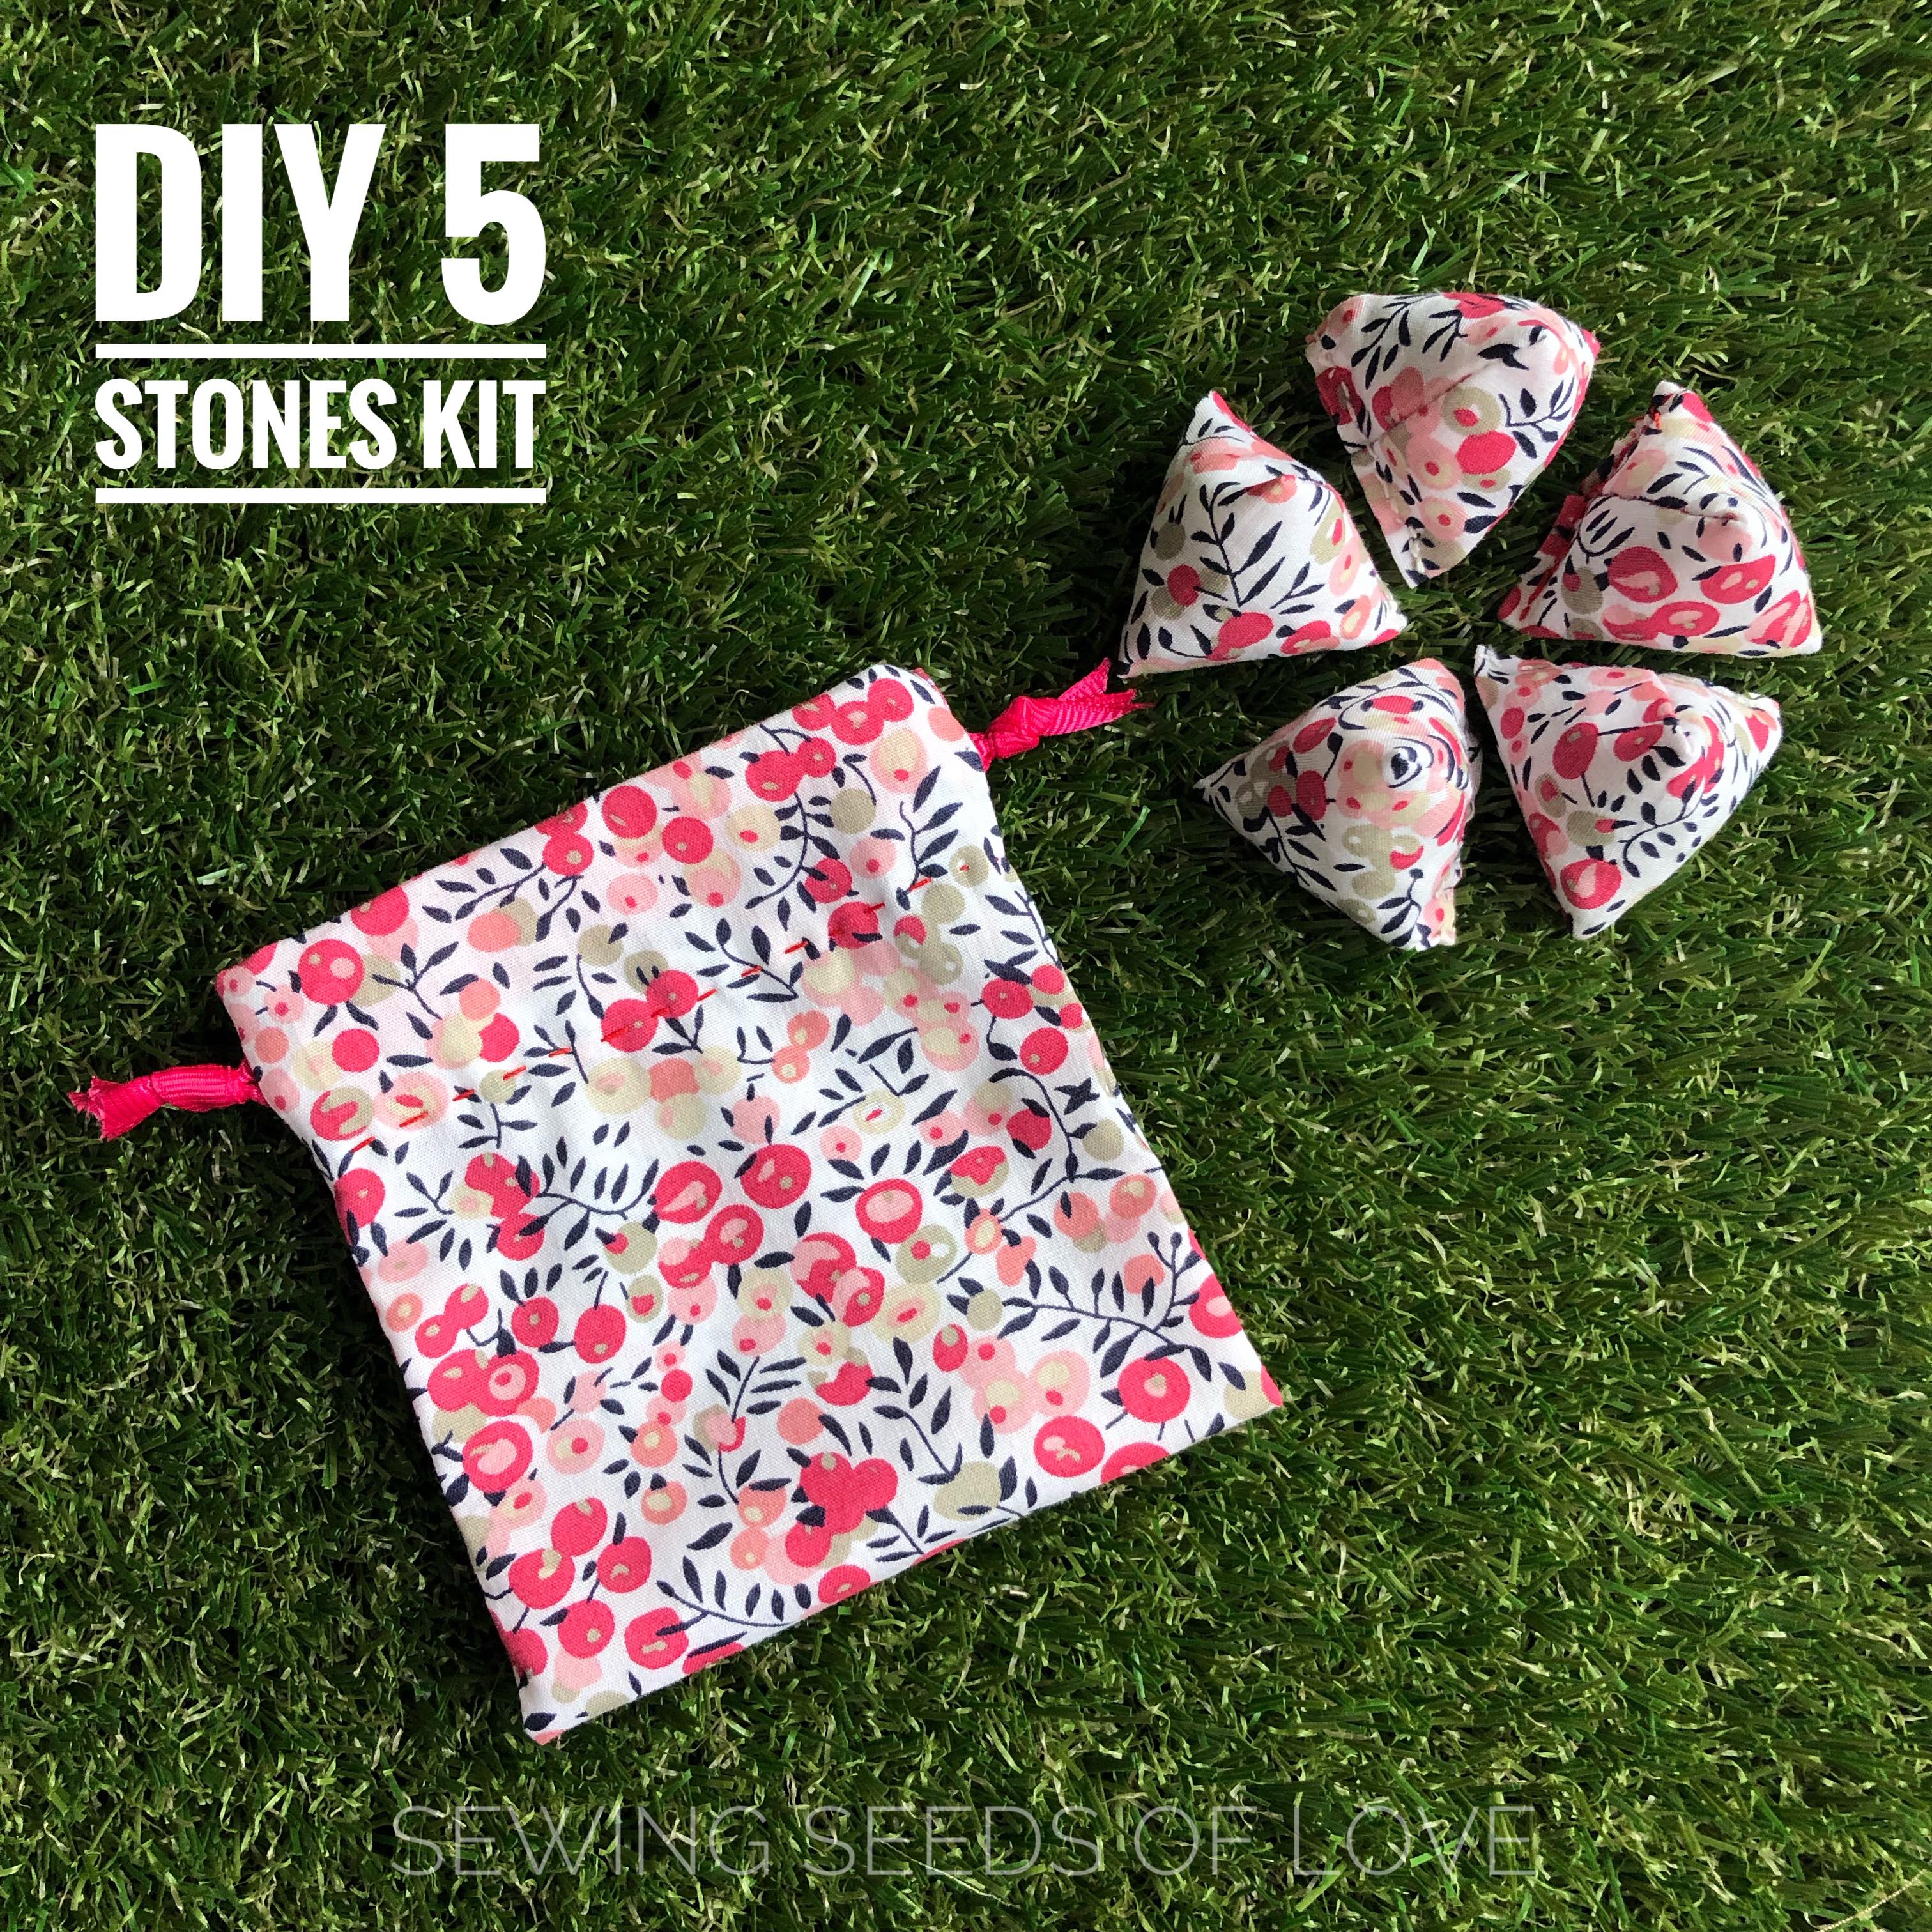 DIY 5 Stones Sewing Kits – Sewing Seeds of Love Studio